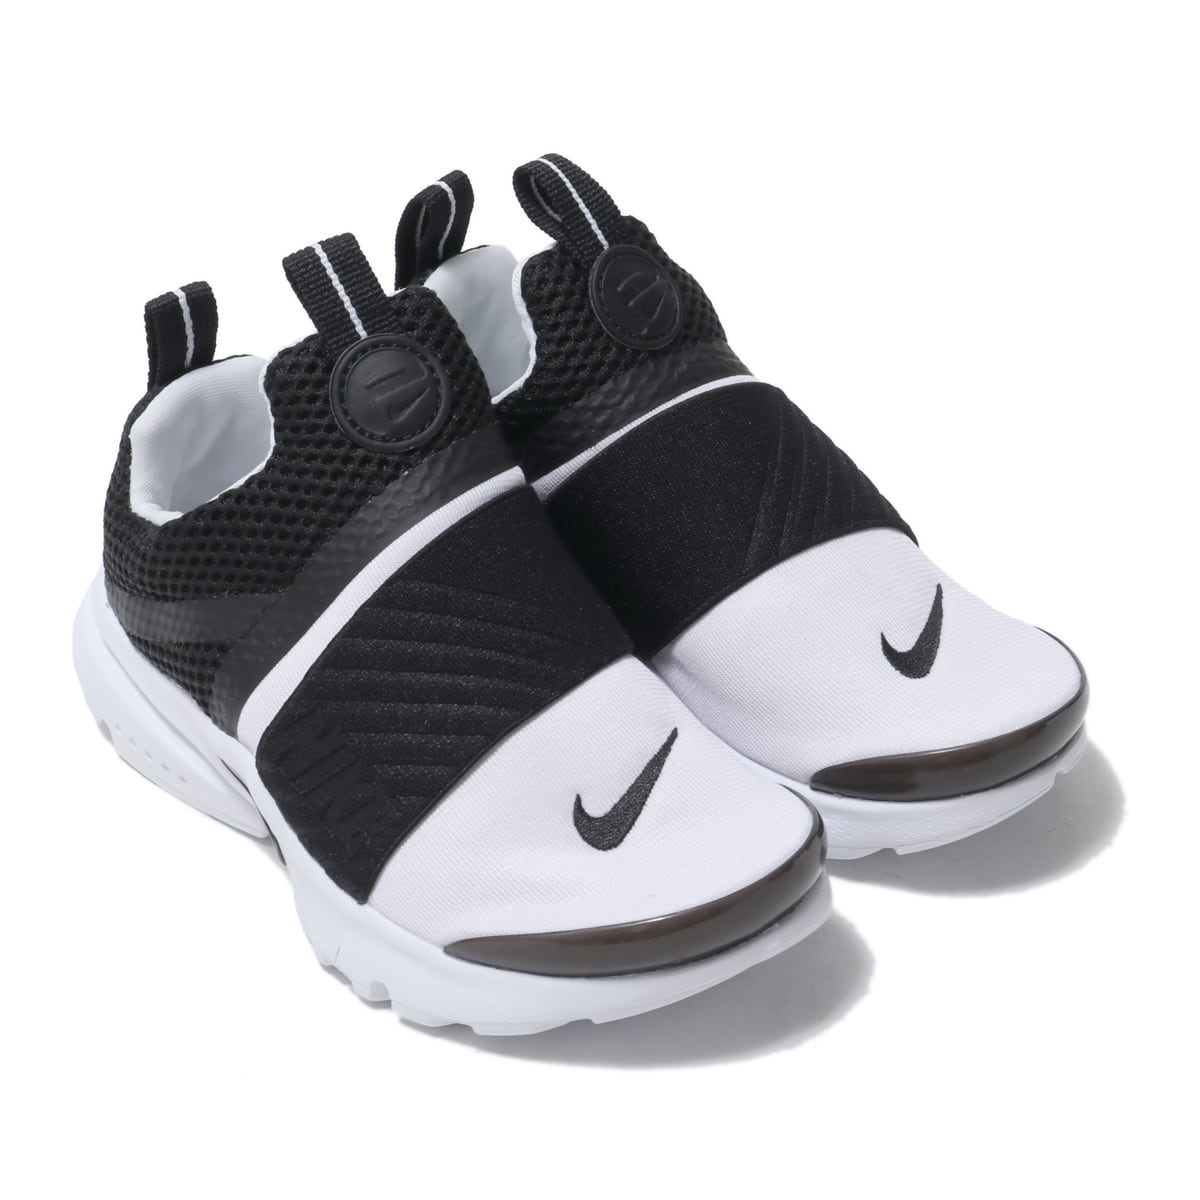 Nike Presto Extreme Ps White Black 18fw I